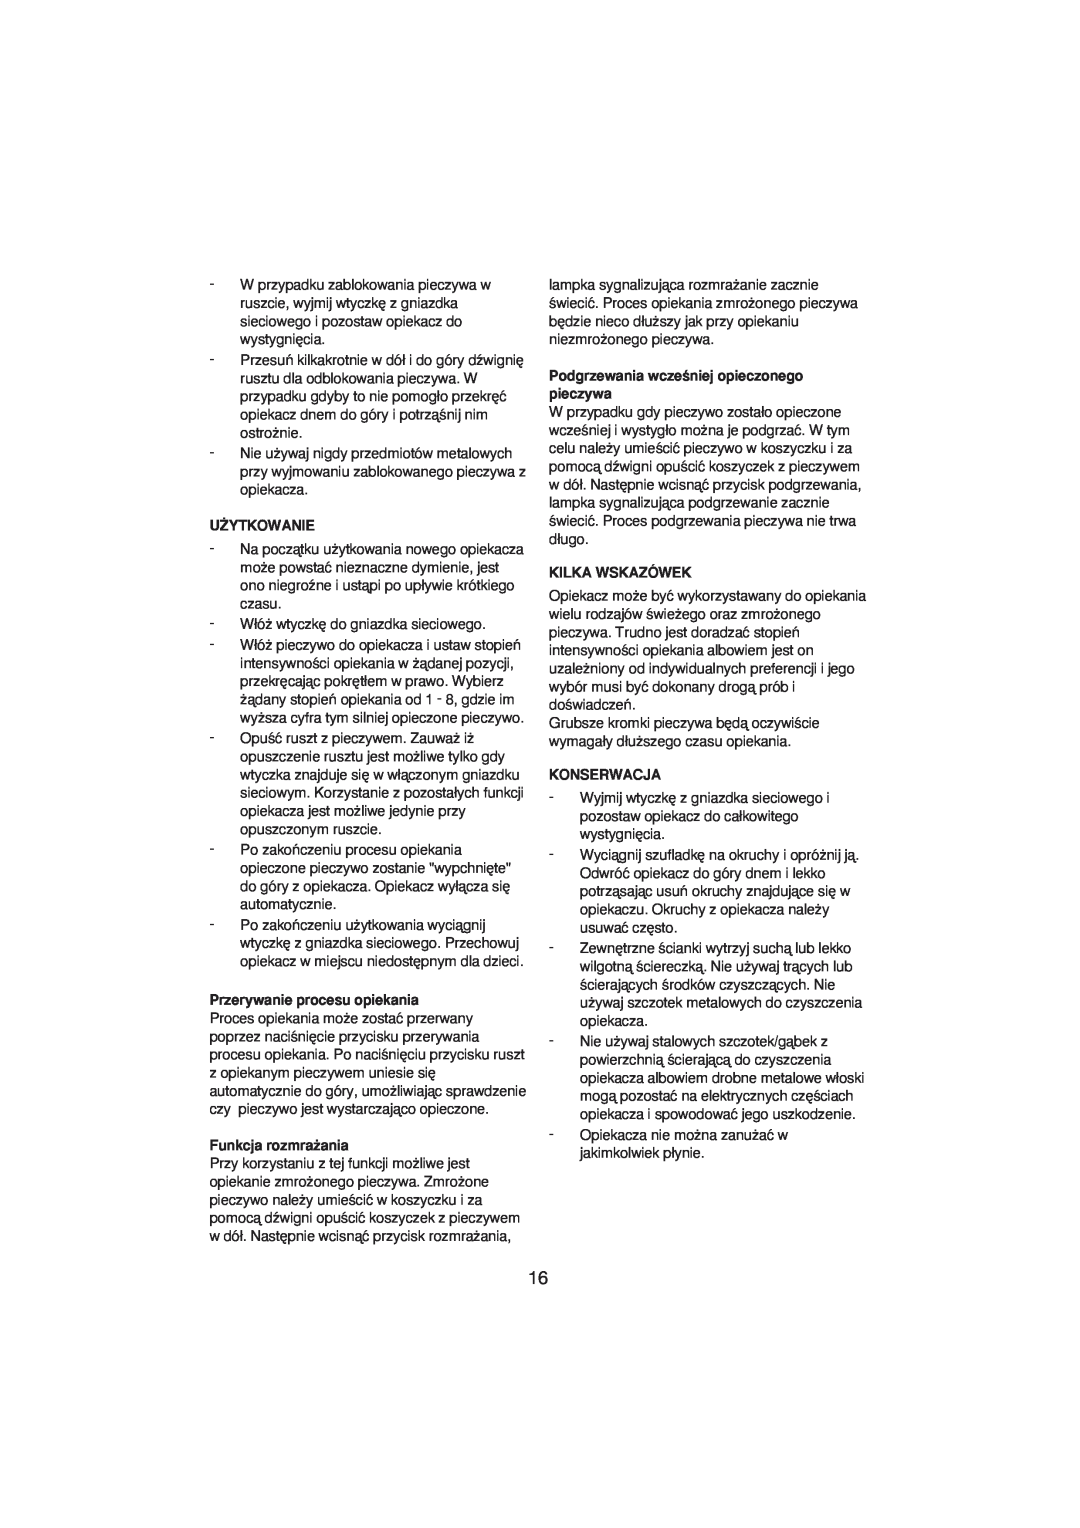 Melissa 243-001 manual U˚Ytkowanie, Przerywanie procesu opiekania, Funkcja rozmra˝ania, Kilka Wskazówek, Konserwacja 